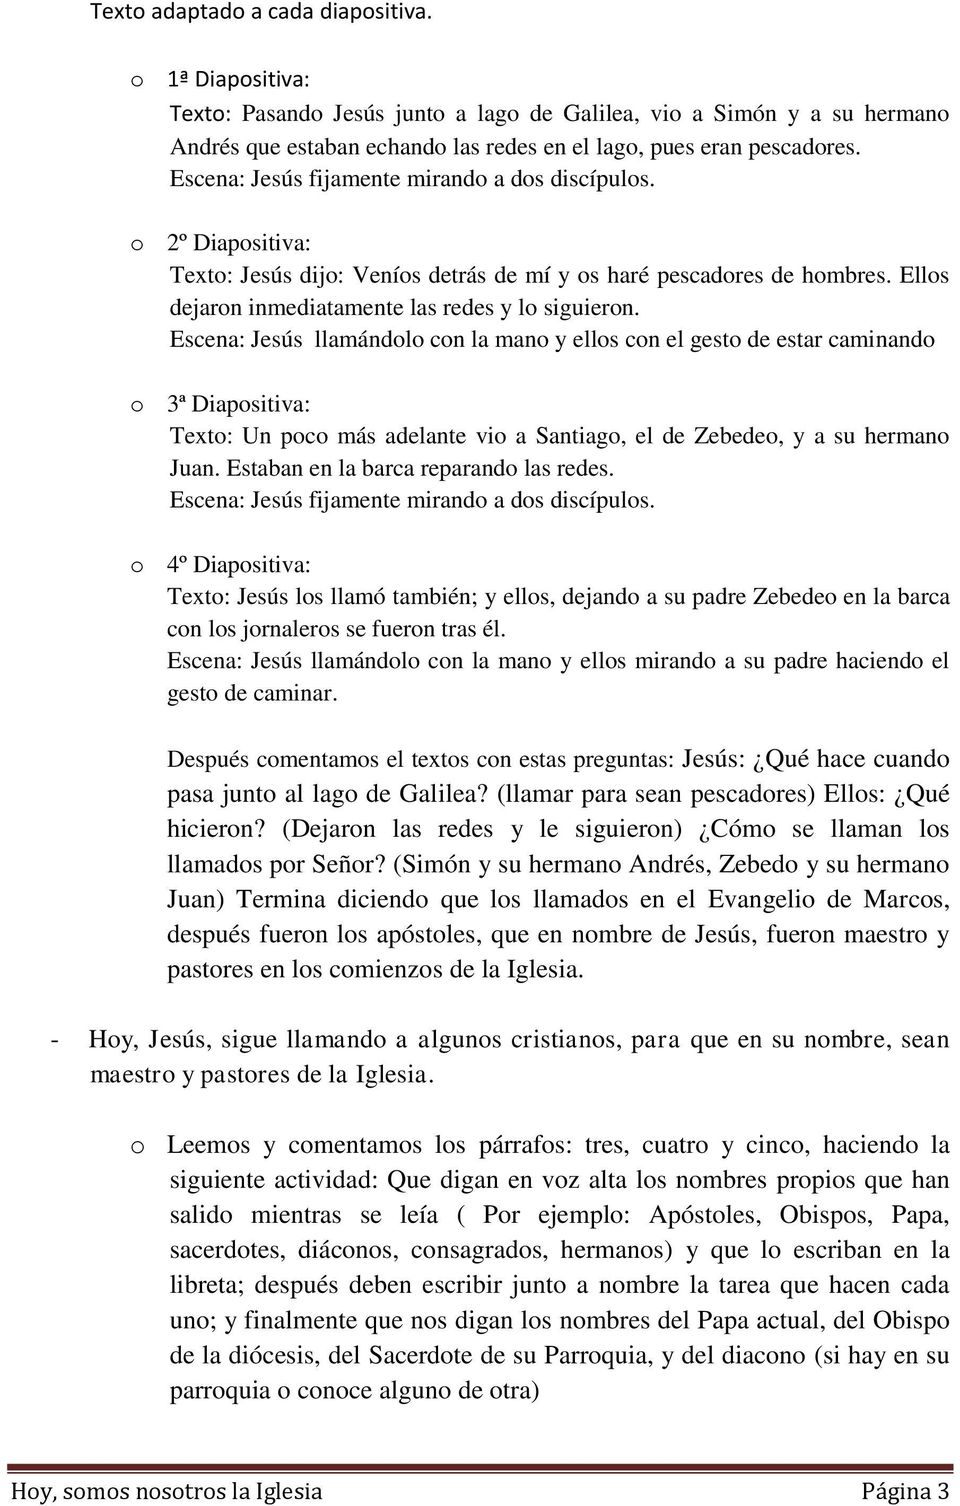 TEMA 25: HOY, NOSOTROS SOMOS LA IGLESIA - PDF Free Download